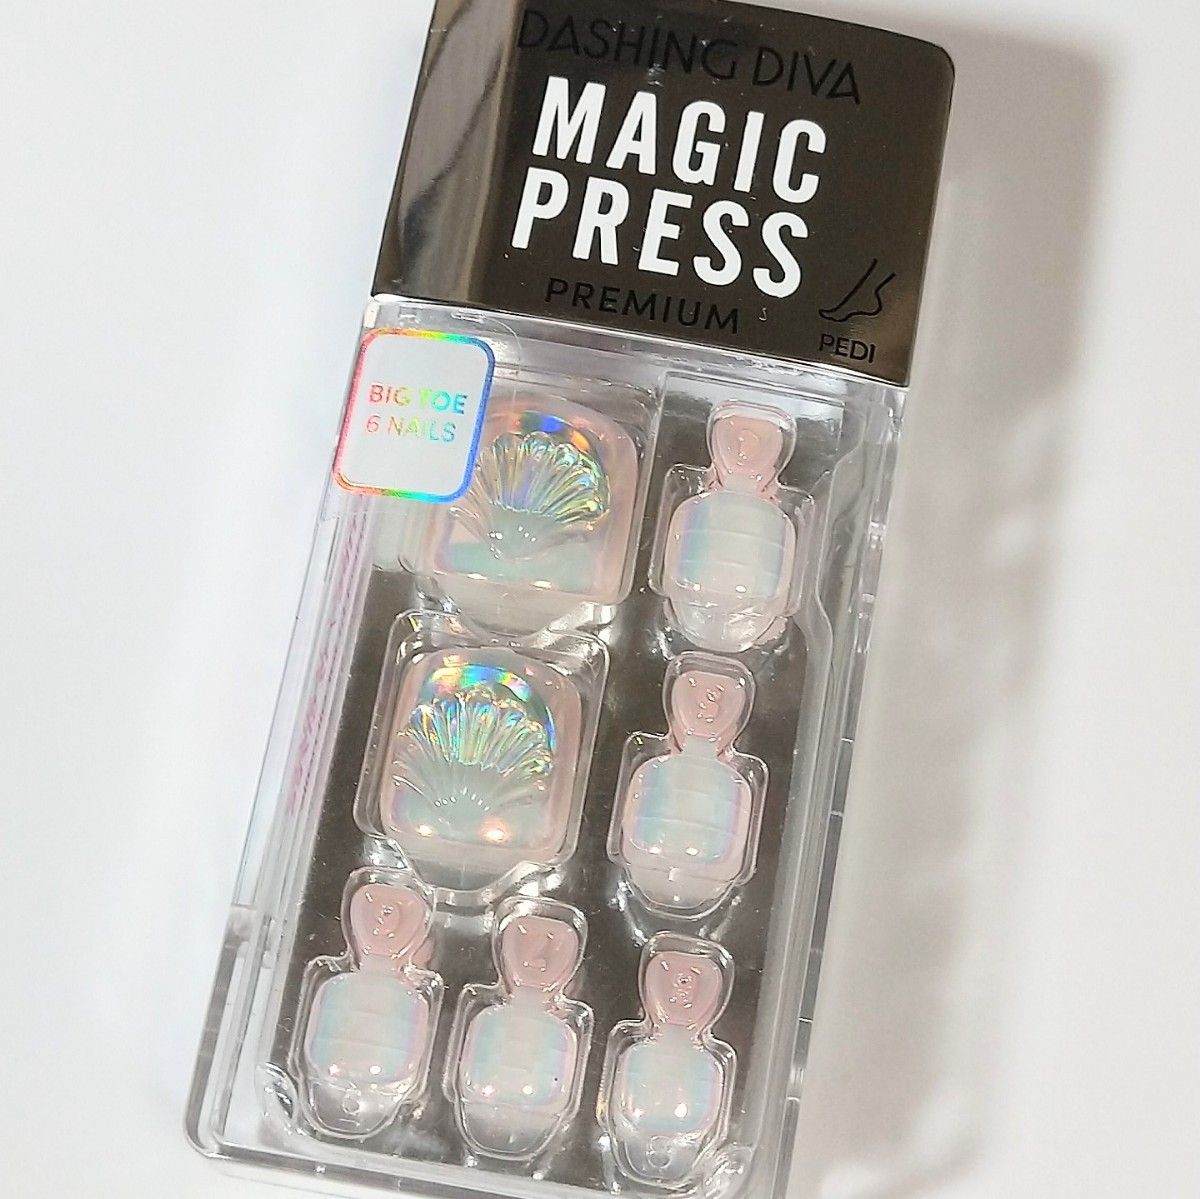 日本未発売品  981  新品 ダッシングディバ マジックプレス ネイルチップ ペディキュア 足爪用  フット 1秒ジェルネイル